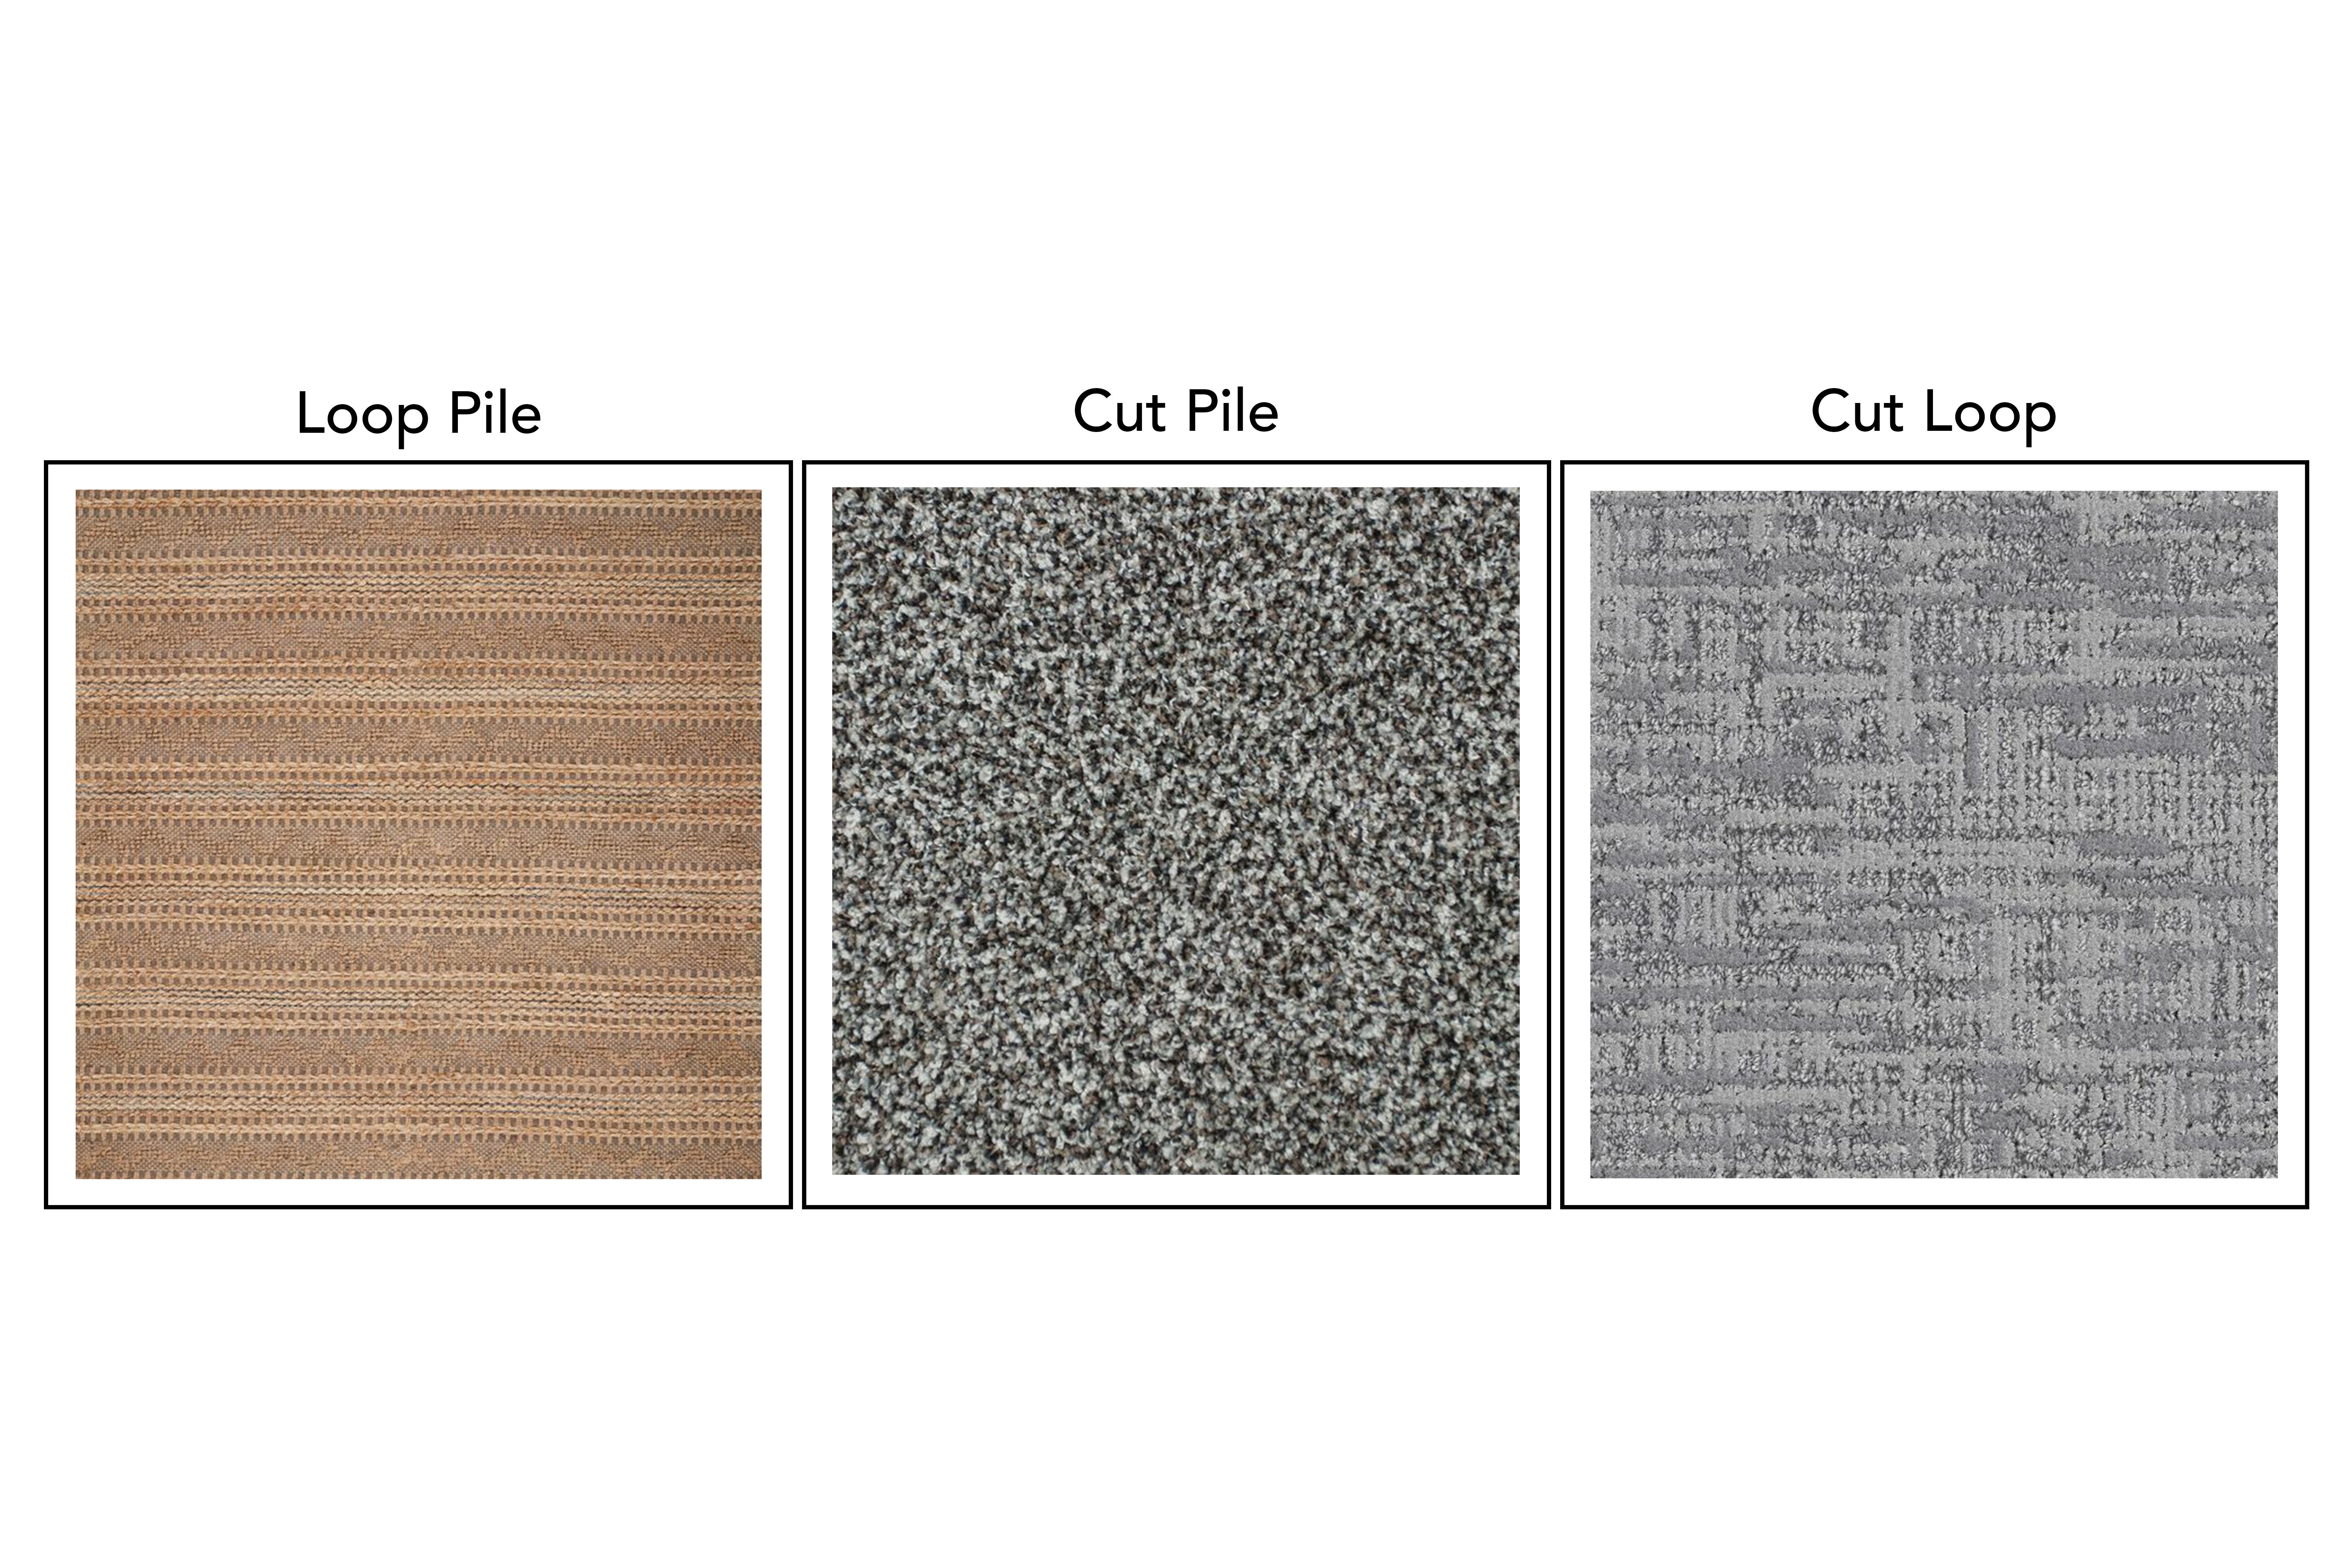 types of carpet